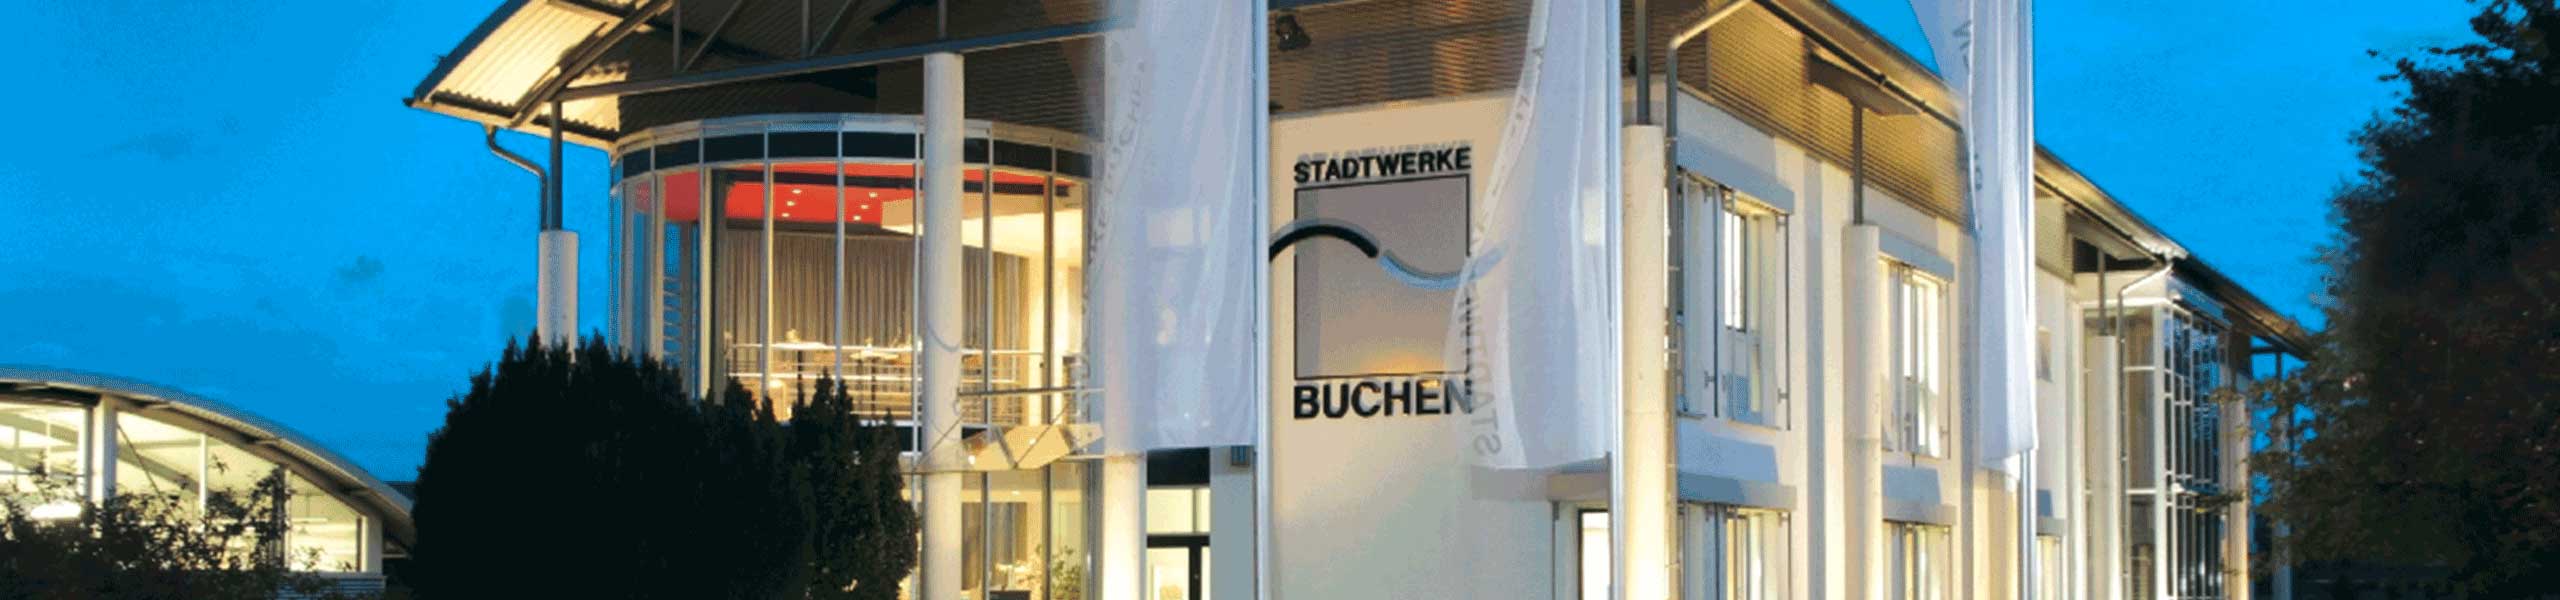 Stadtwerke Buchen GmbH & Co KG - Wir raten von Heizlüftern ab: teuer und ineffizient